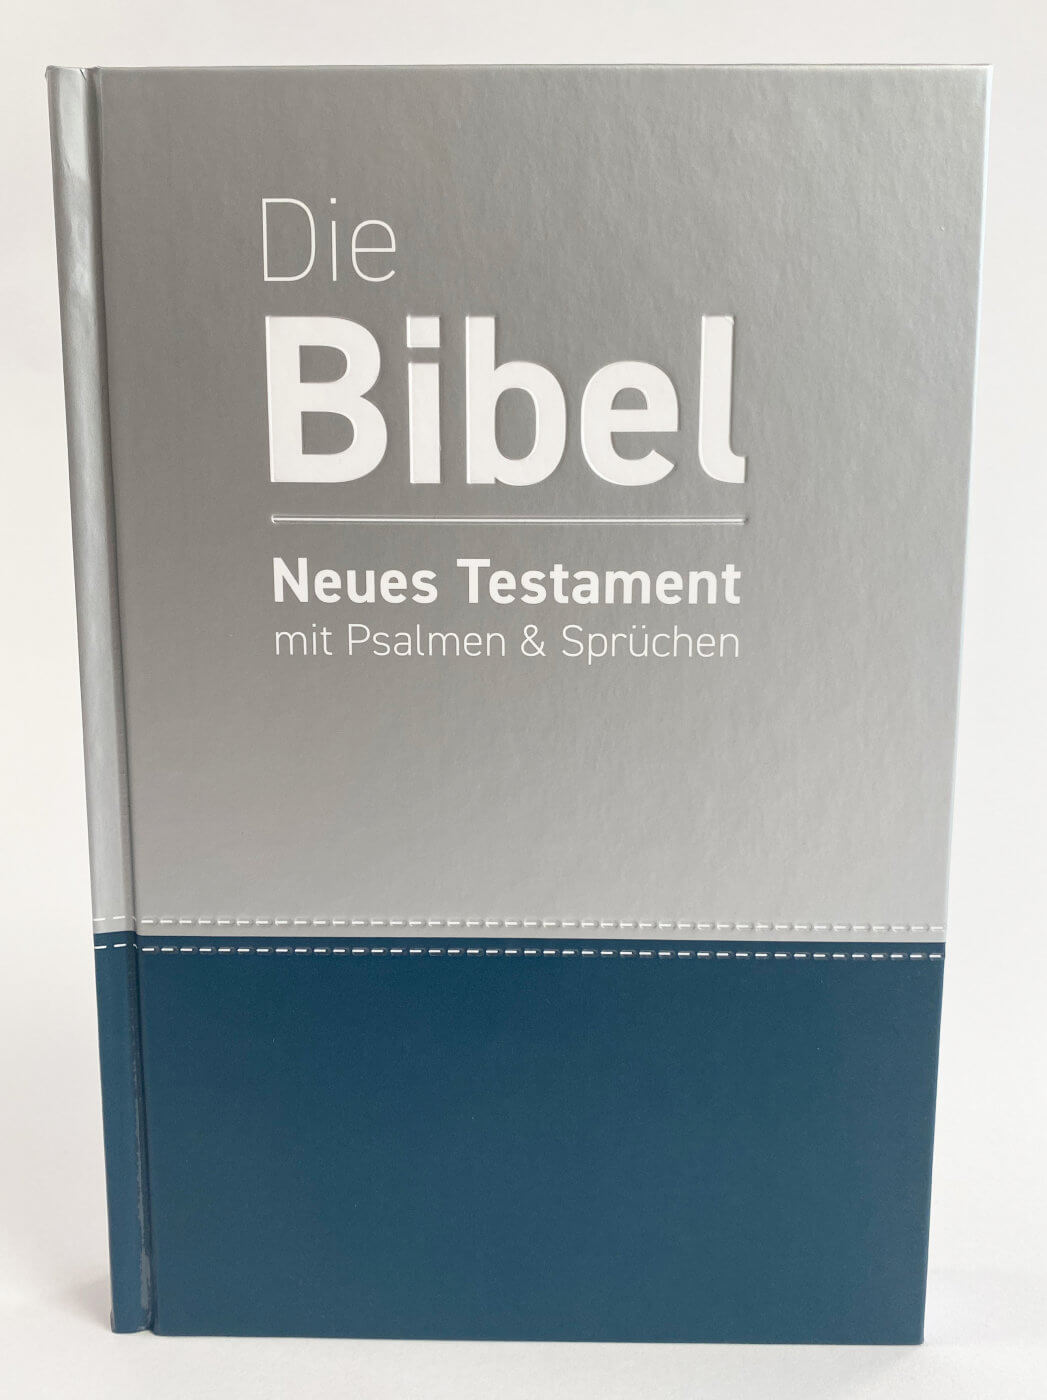 Die Bibel NT mit Psalmen & Sprüchen luther.heute Großdruck 